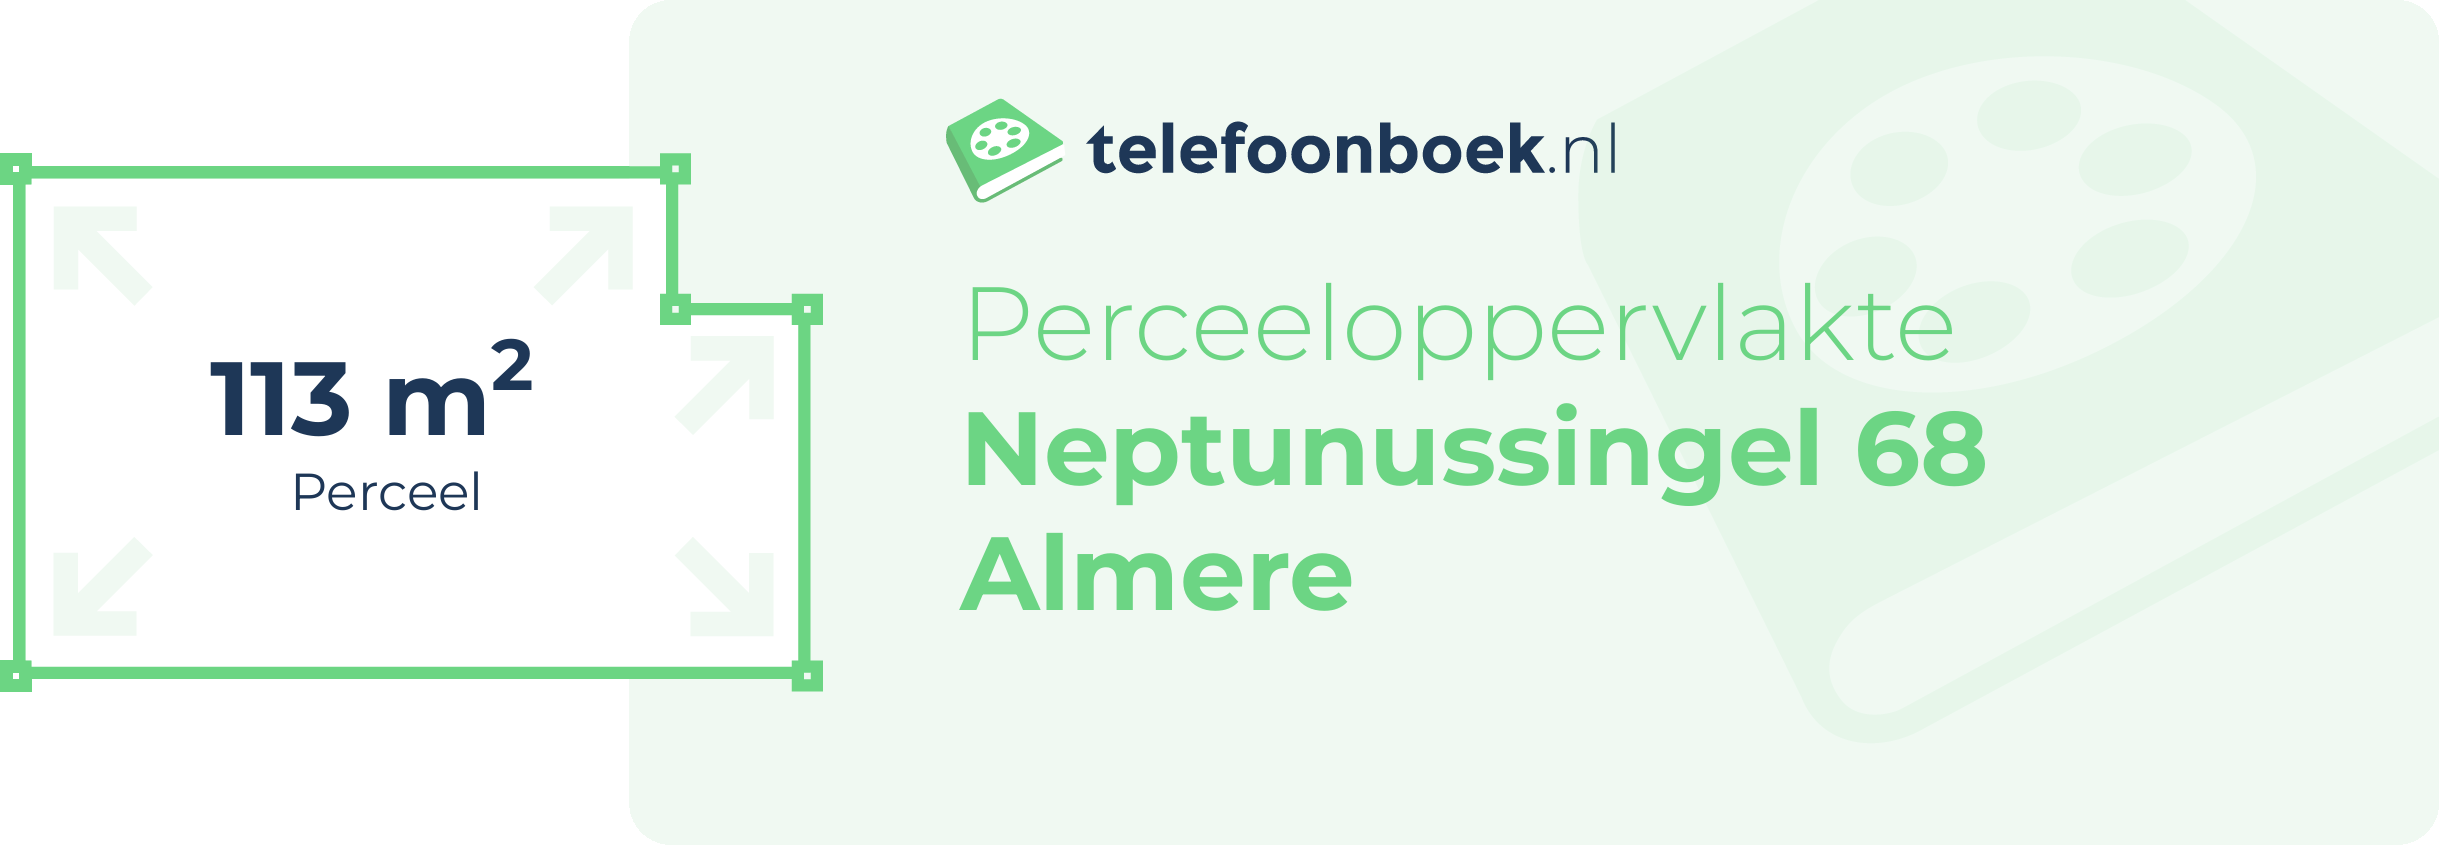 Perceeloppervlakte Neptunussingel 68 Almere